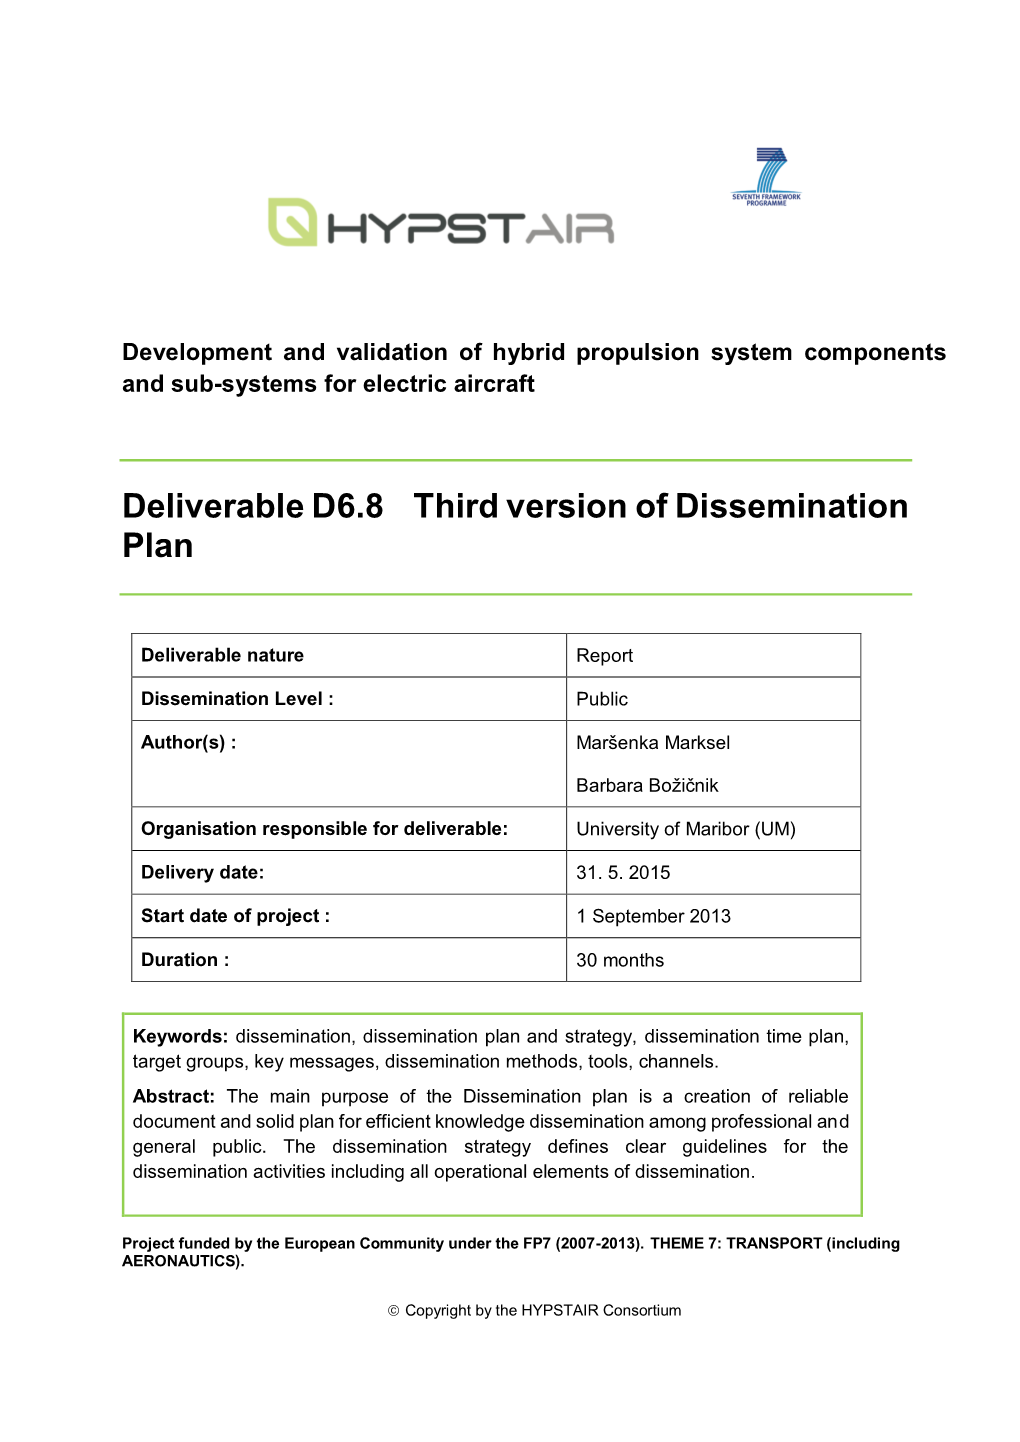 Third Version of Dissemination Plan